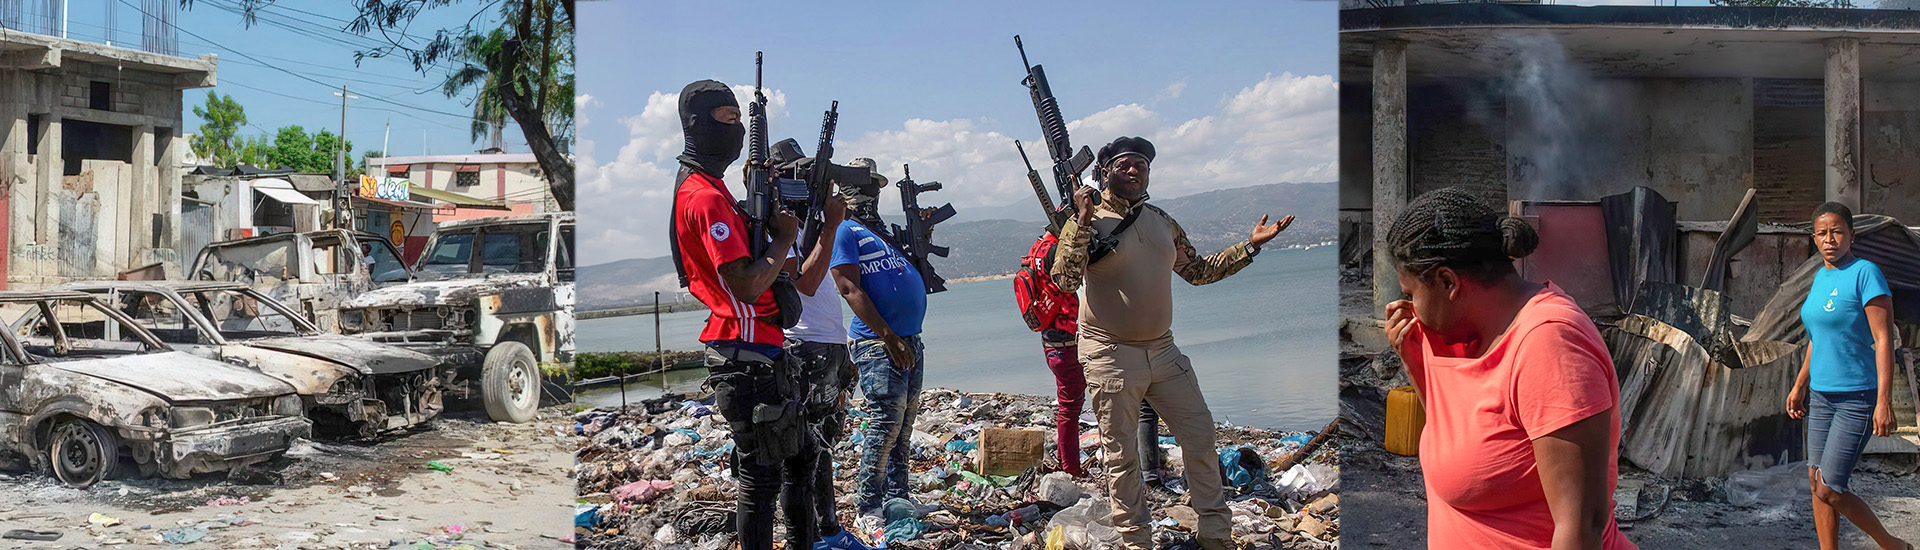 “Estamos viviendo un infierno”, aseguran los misioneros salesianos en Haití en medio de la violencia y el caos